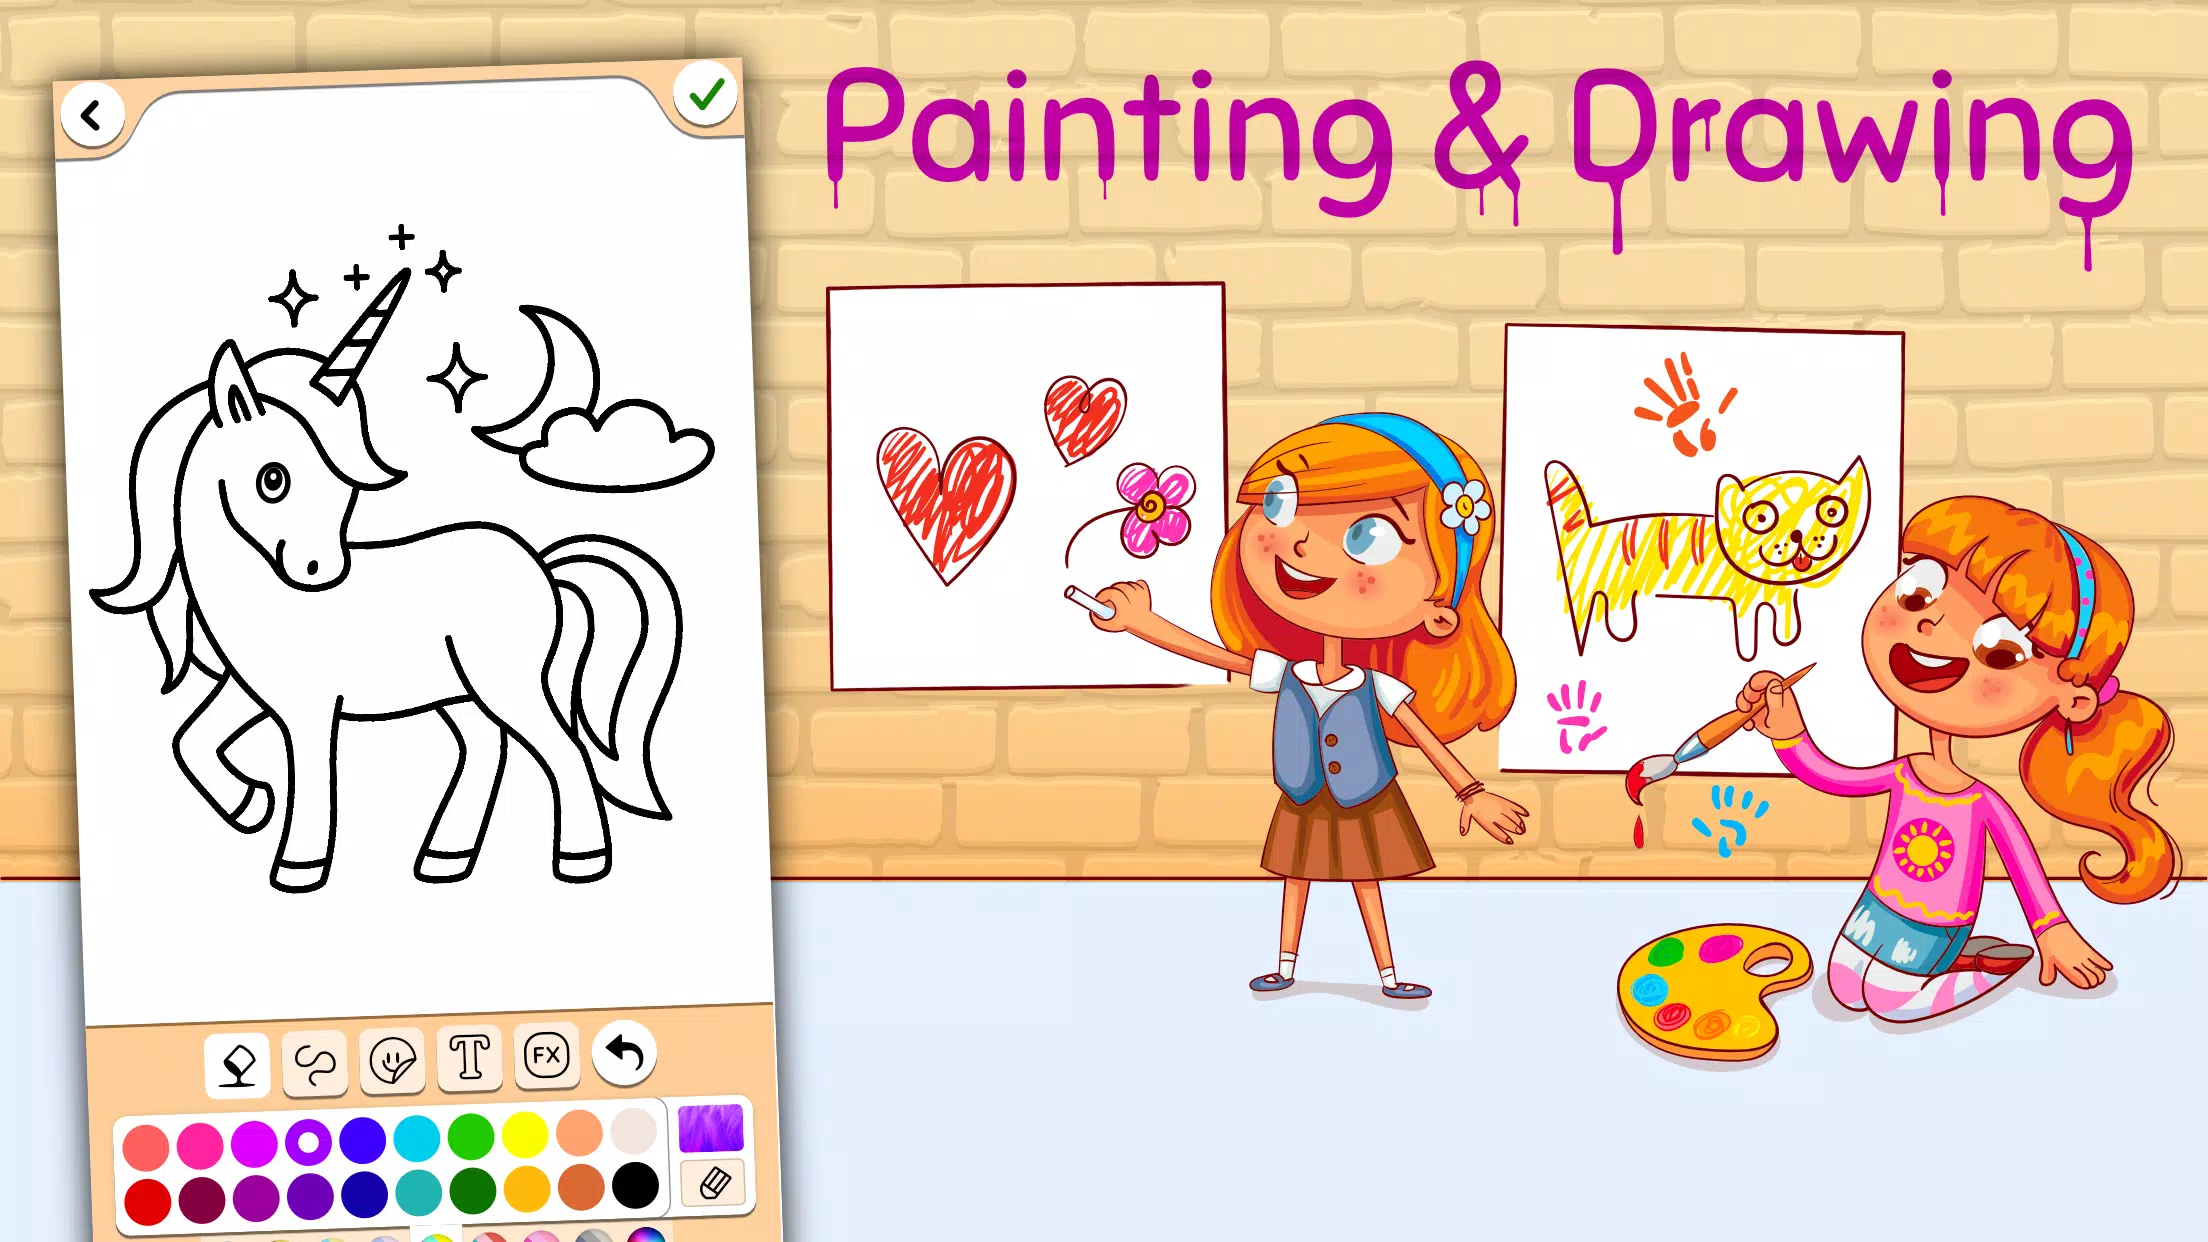 Download do APK de Jogo de pintura e desenho para Android